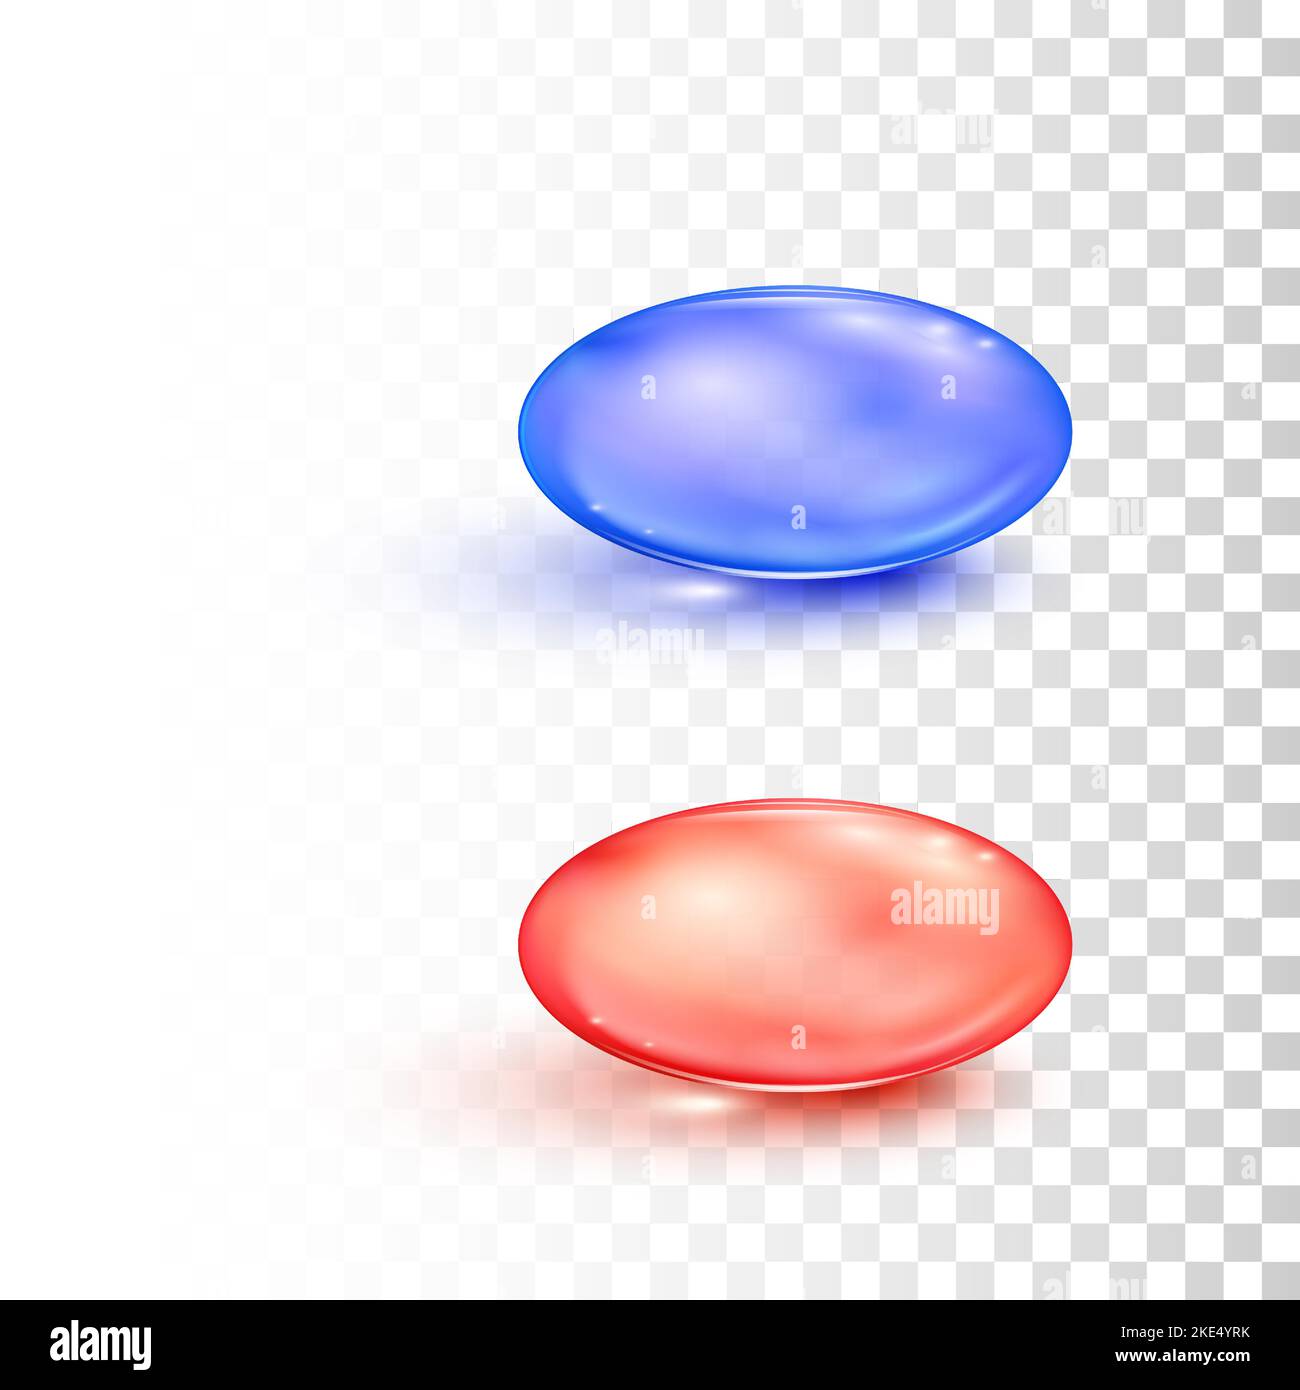 Pastillas transparentes redondas rojas y azules de estilo matricial aisladas sobre fondo transparente. Concepto de elección. Cápsulas de medicamentos. Ilustración vectorial Ilustración del Vector